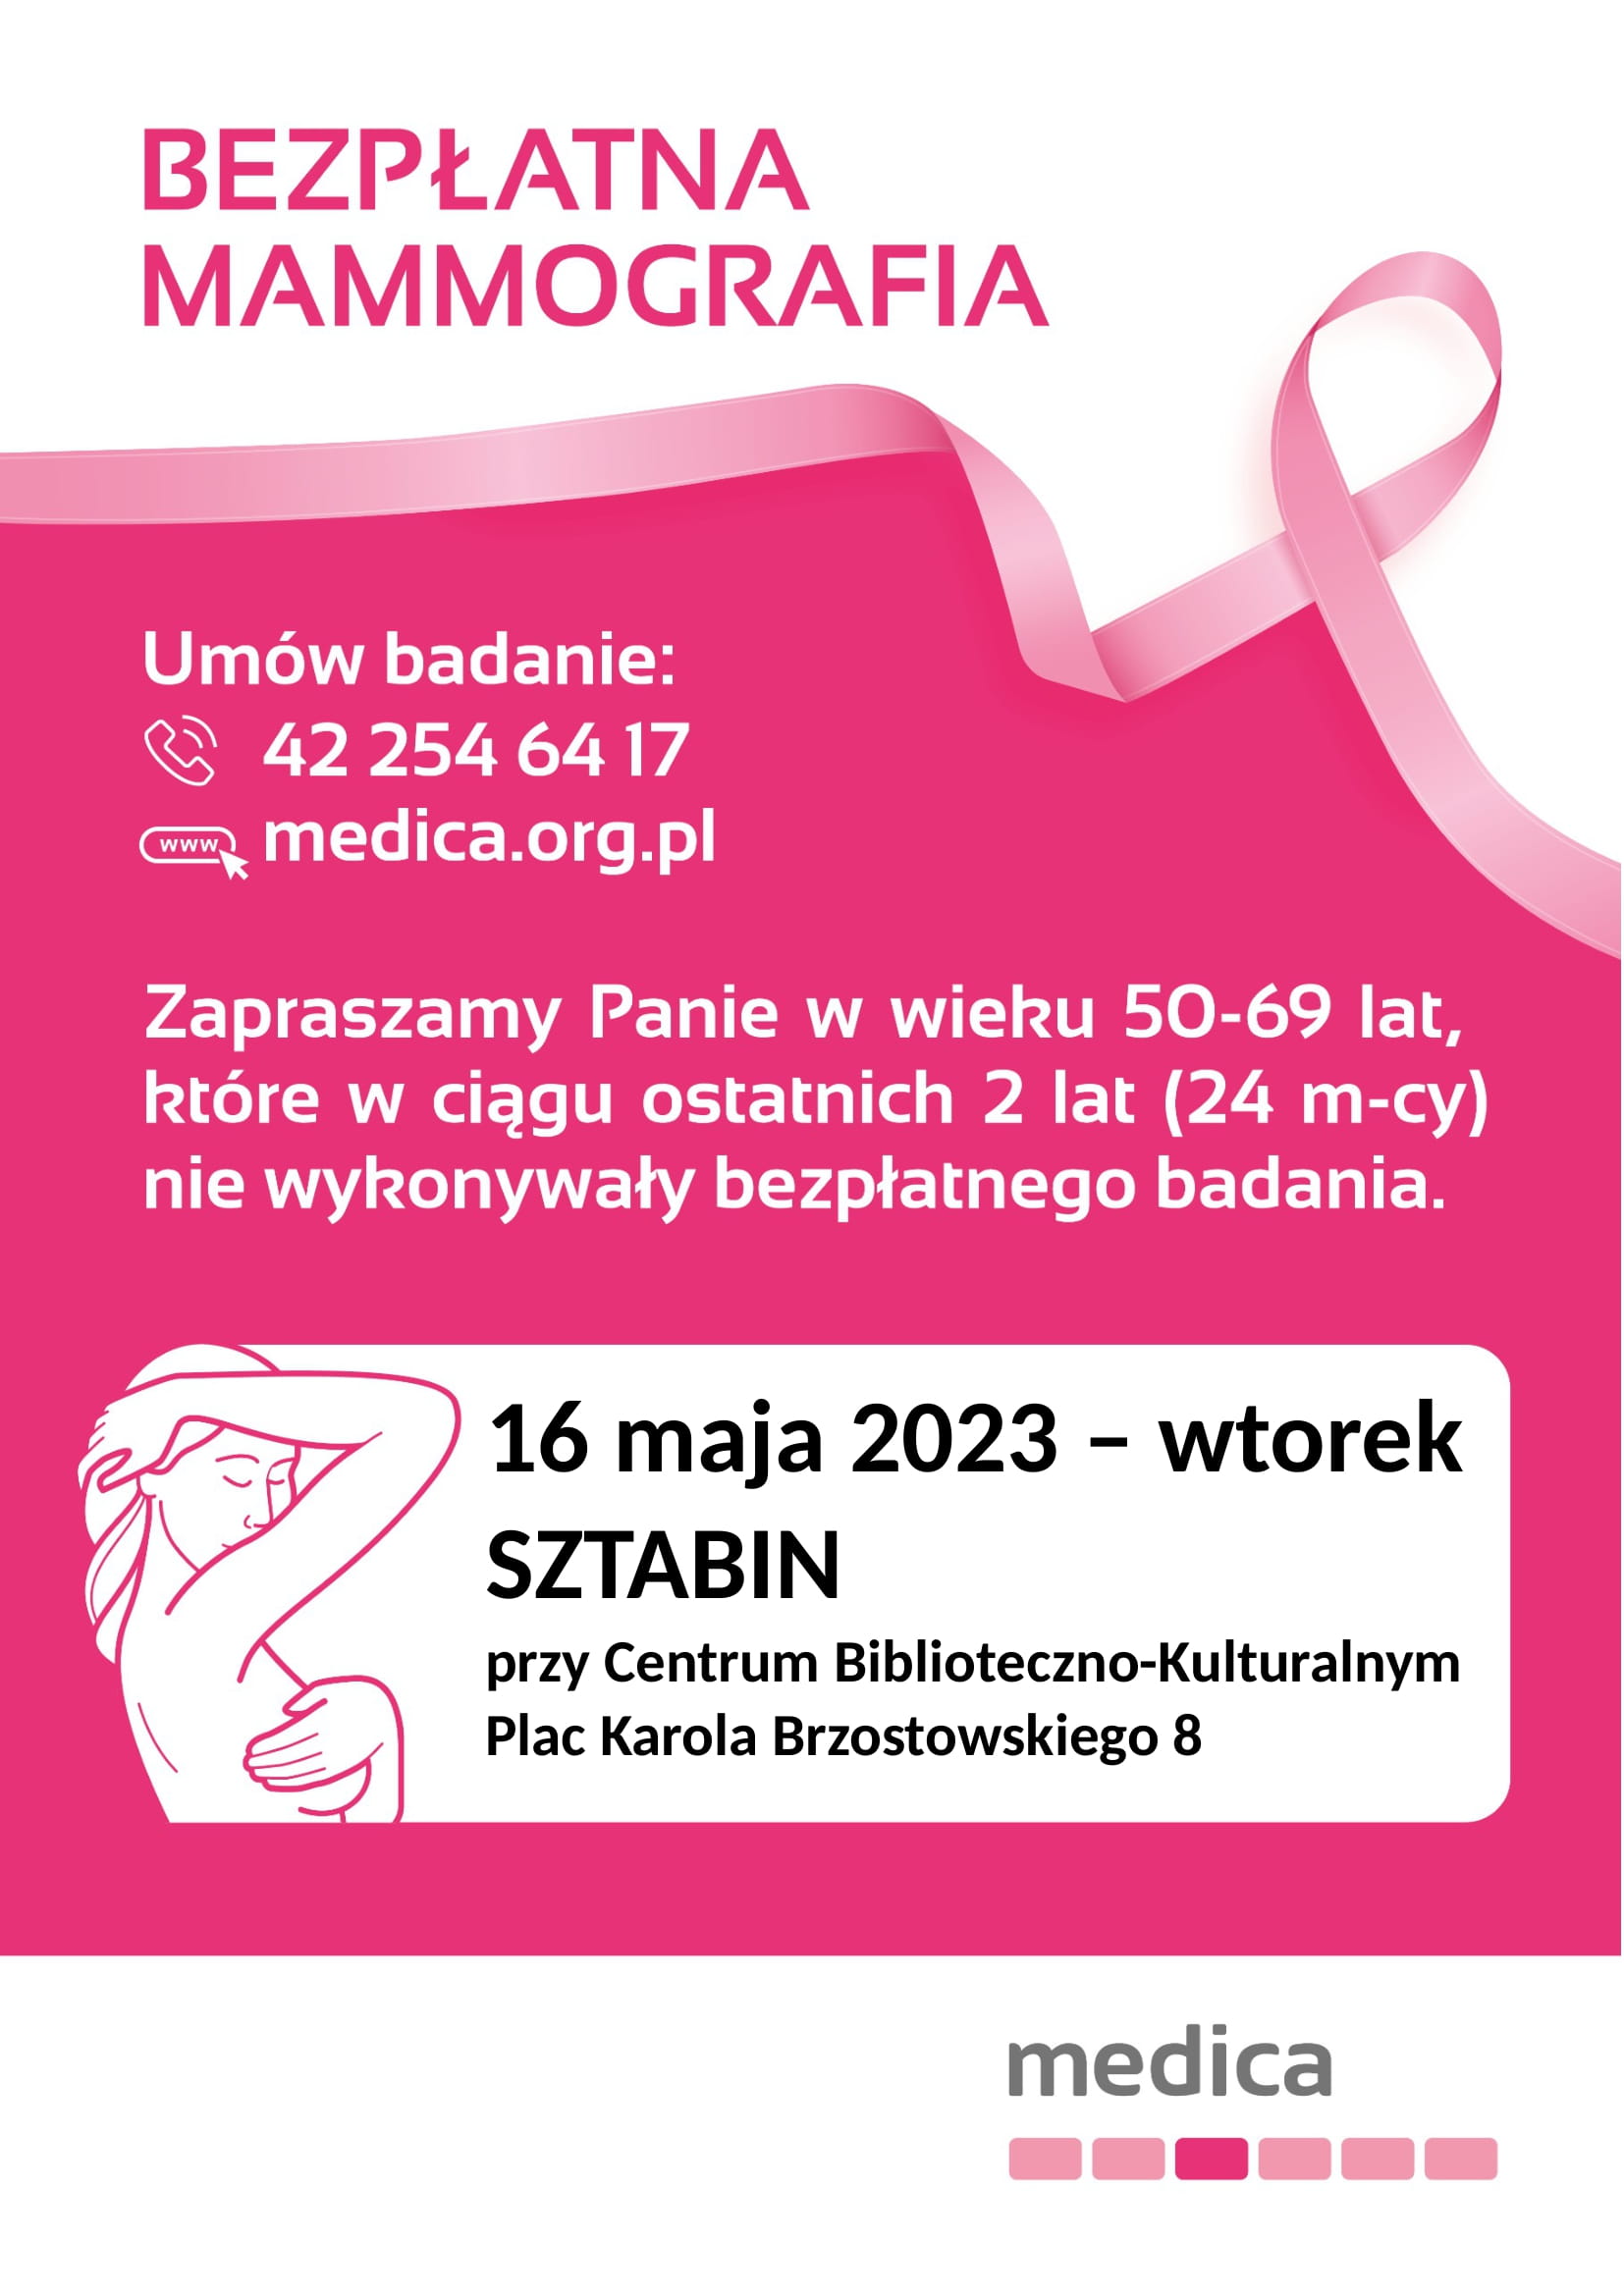 Mammografia w Sztabinie